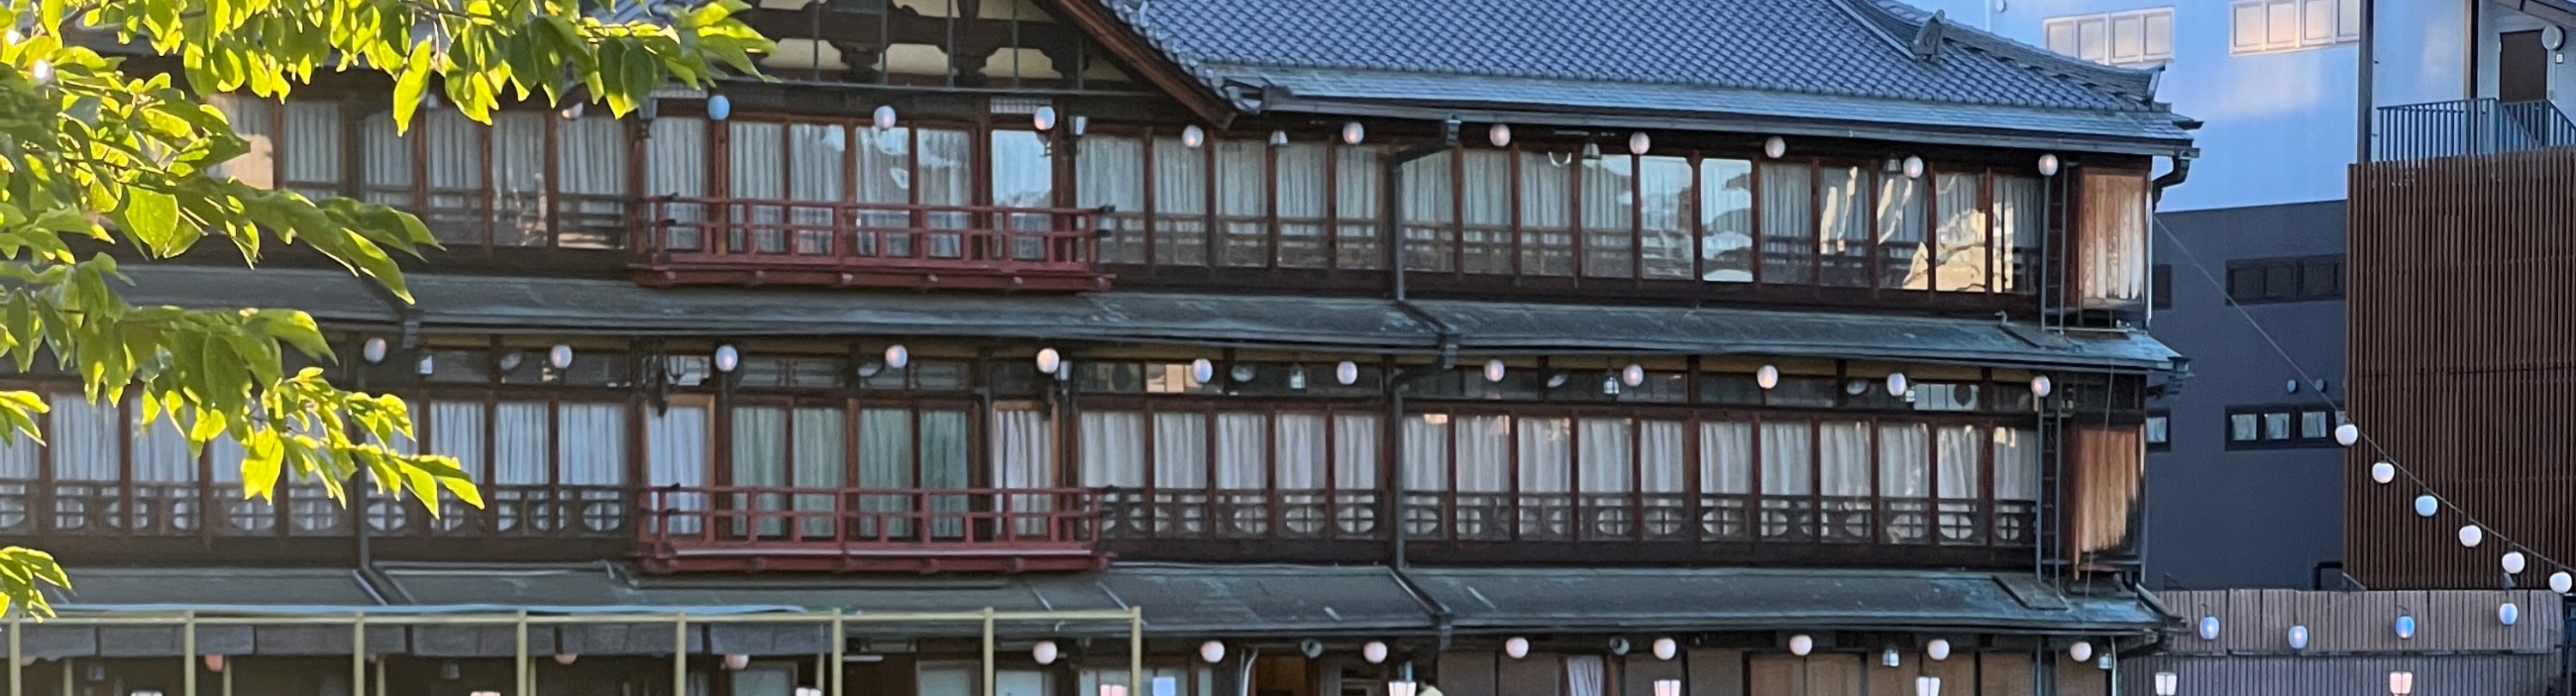 京都和服租賃體驗